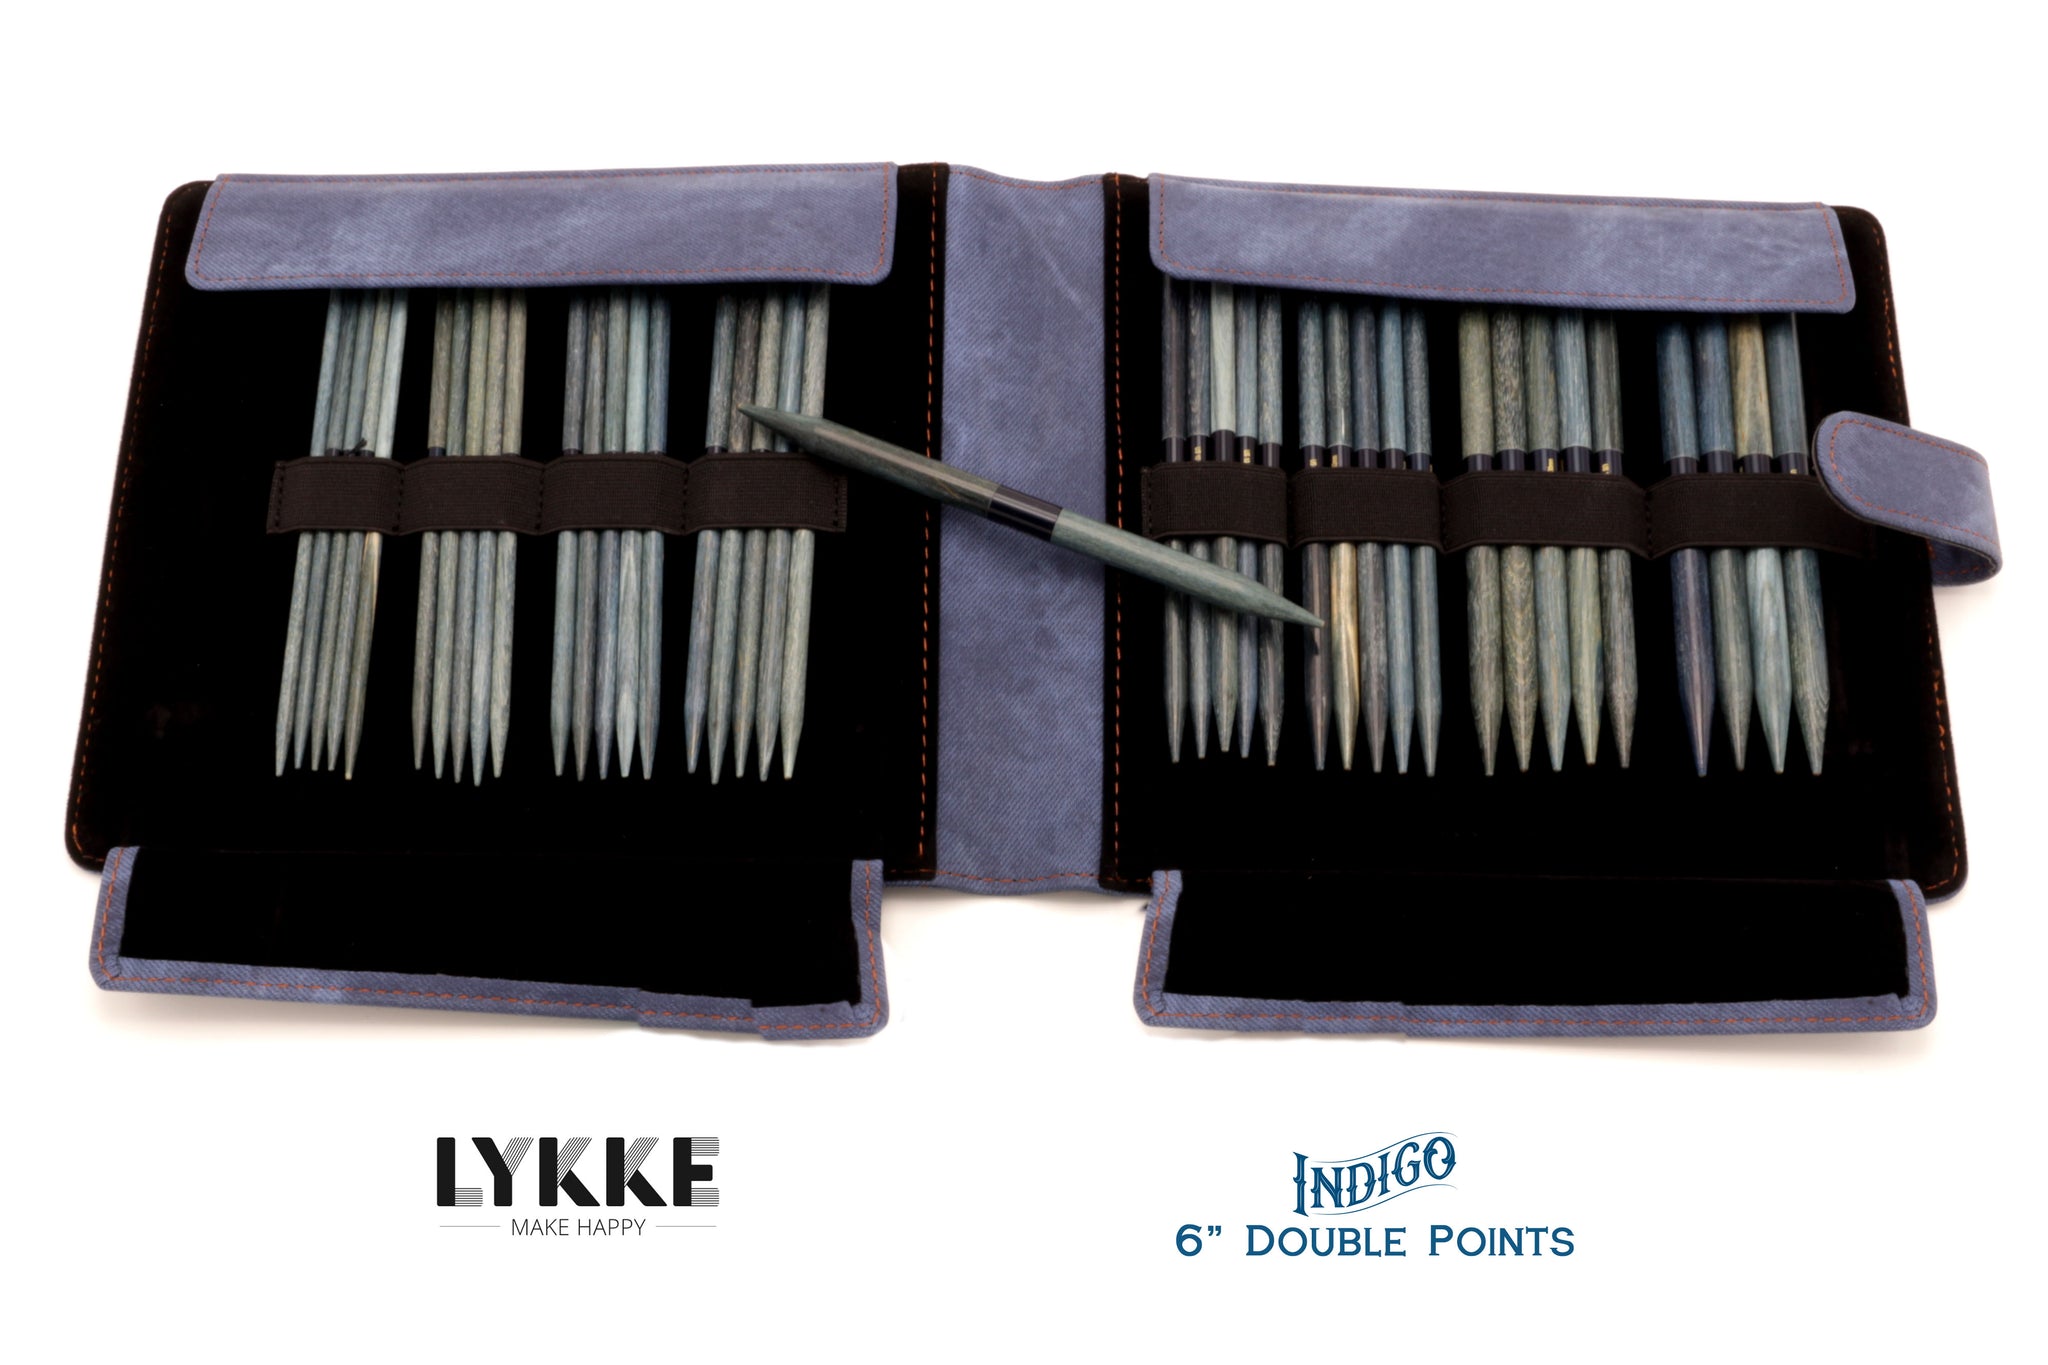 LYKKE - Indigo 6 Double-Pointed Knitting Needle Set US 6-13